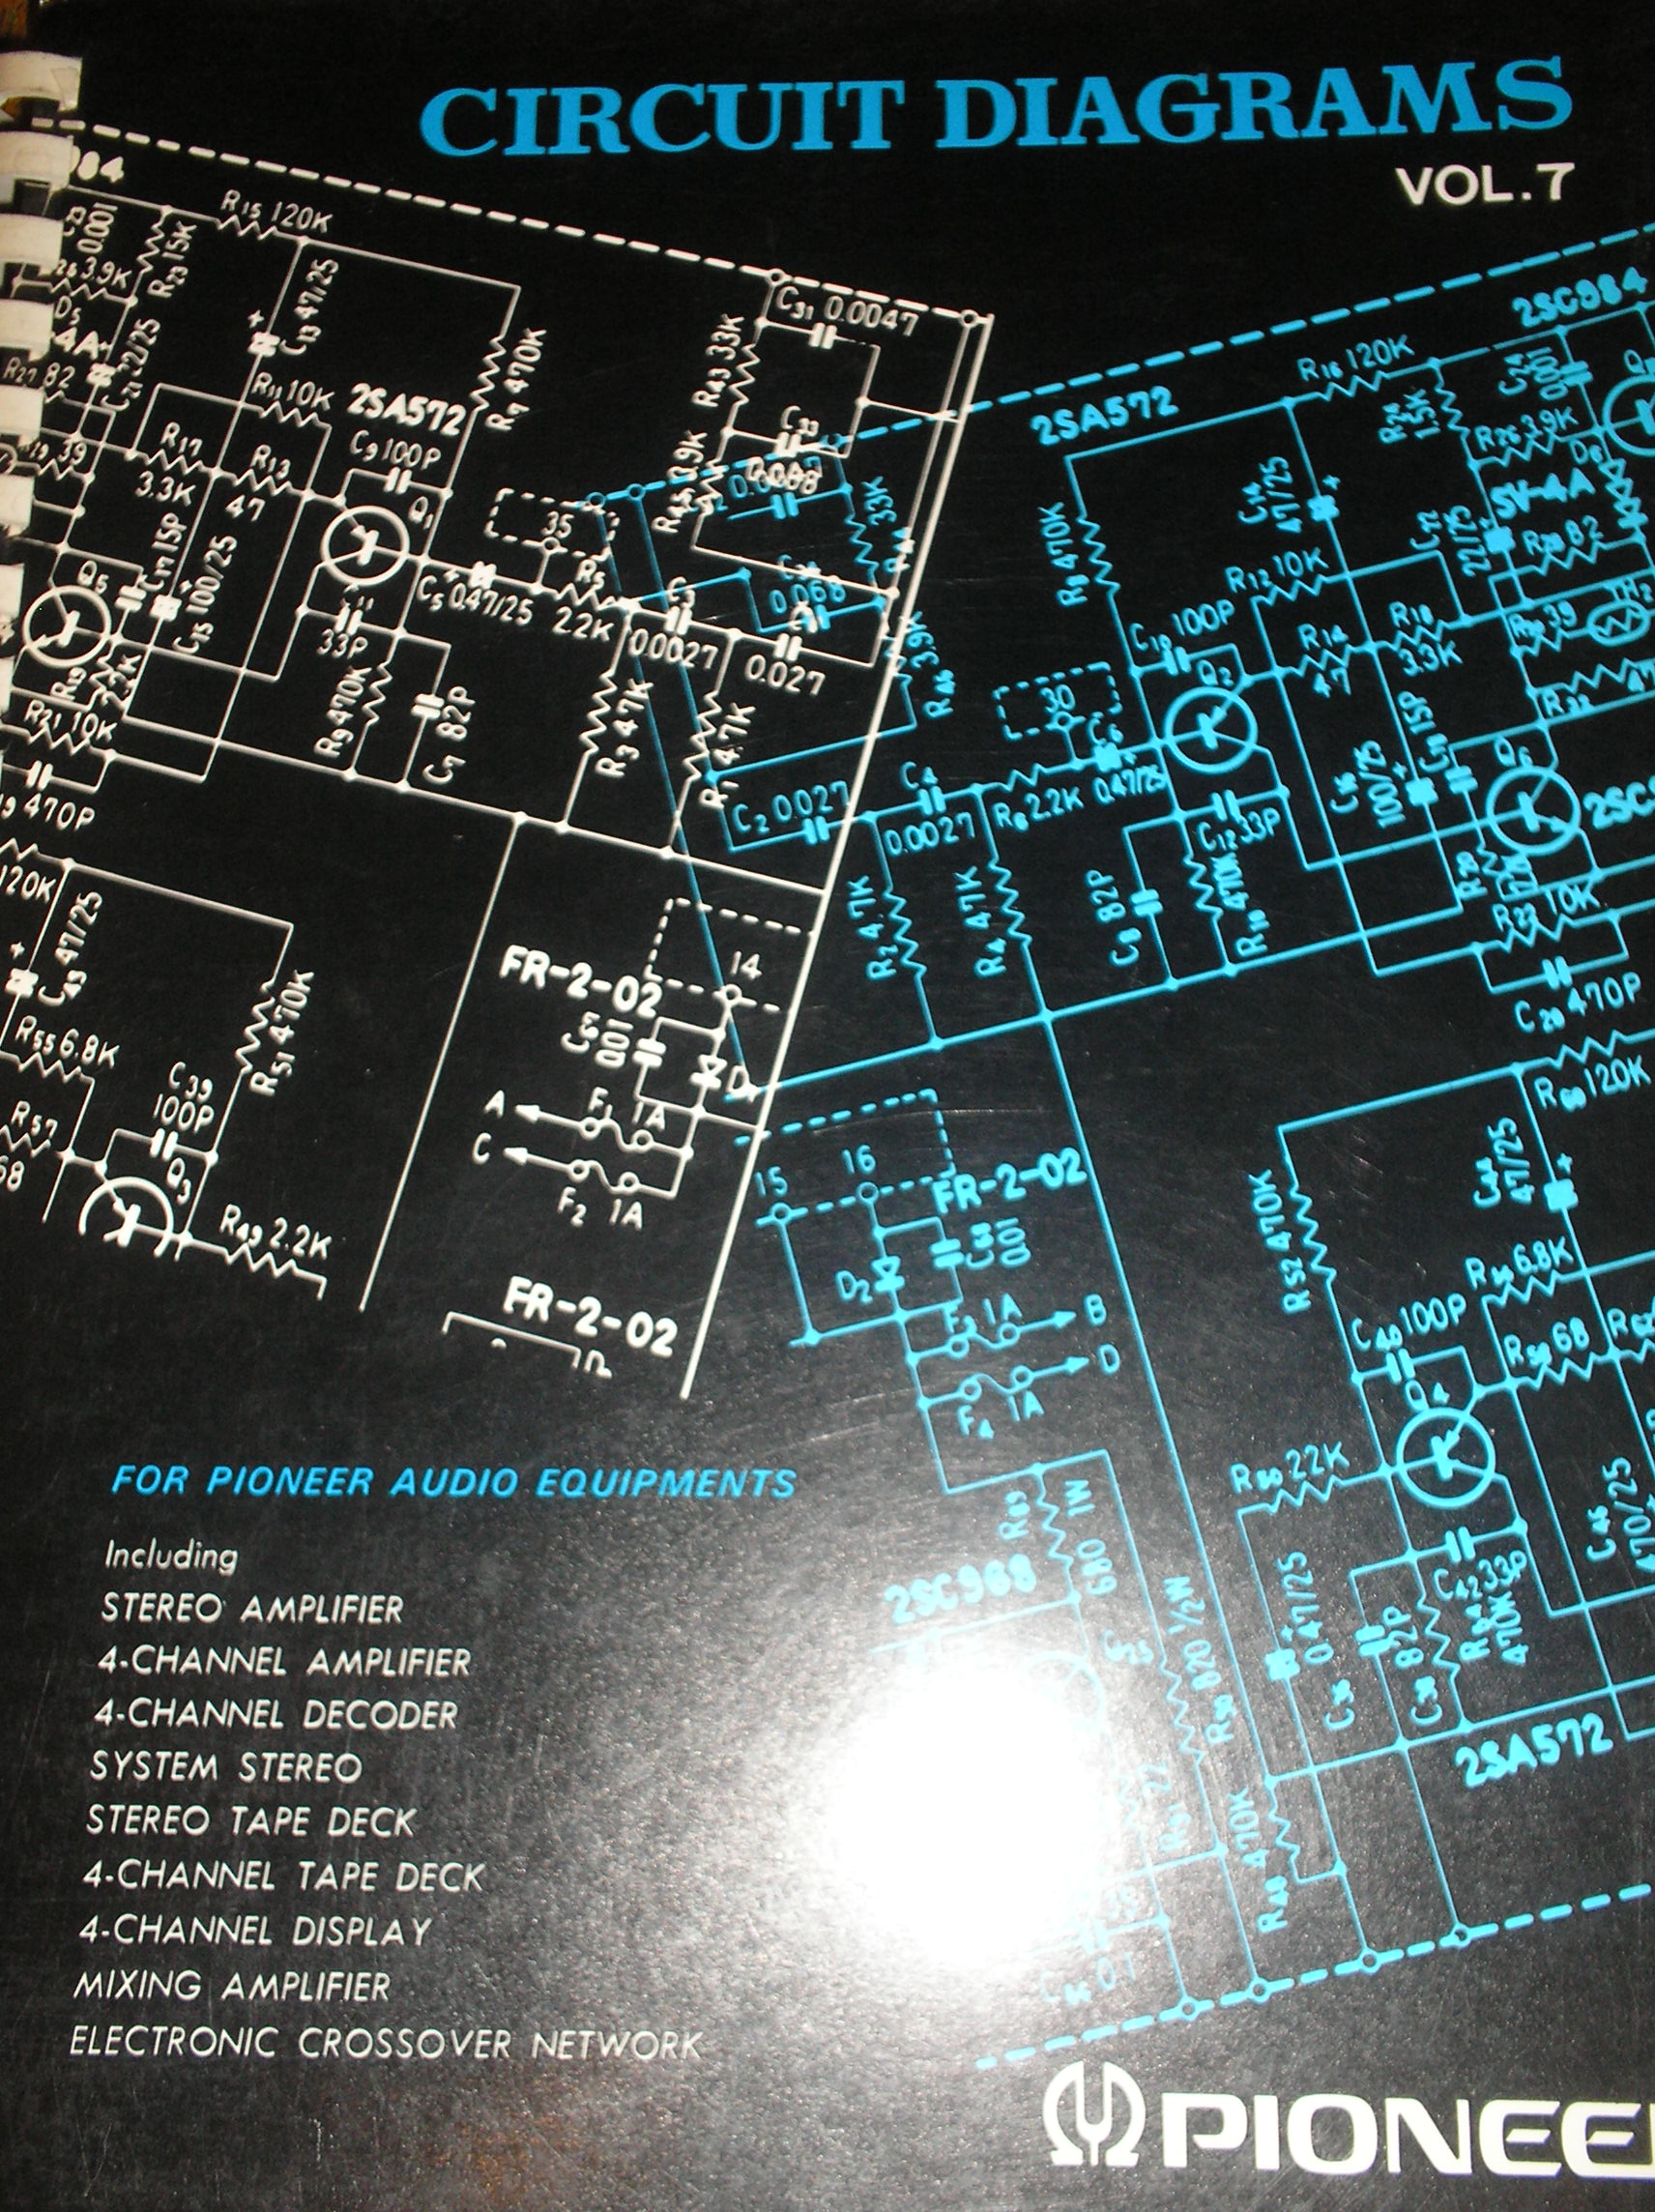 CT-3131 Cassette Deck fold out schematics.   Book 7